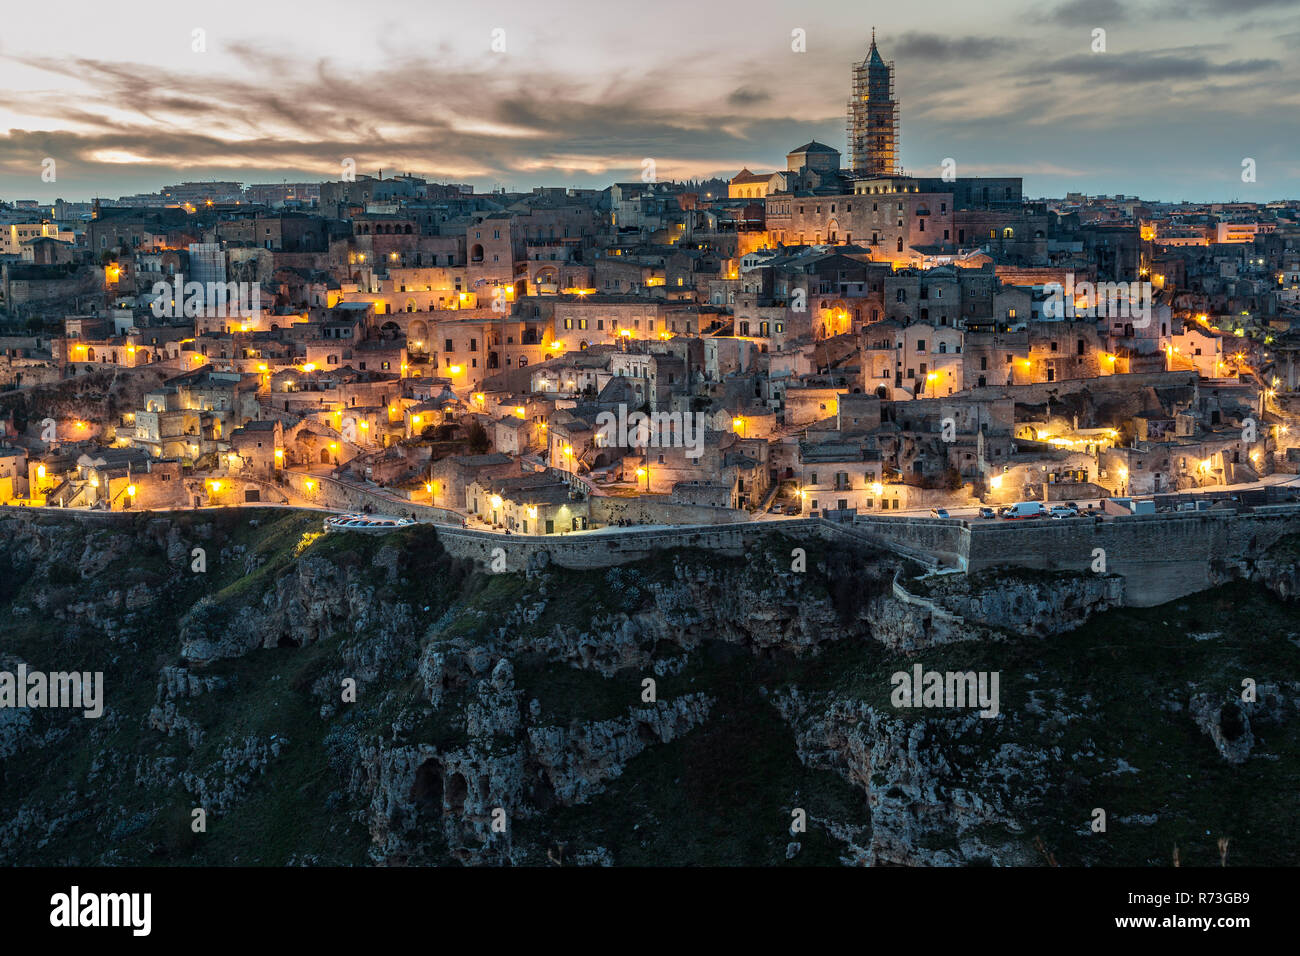 La ville de Matera, Capitale européenne de la Culture 2019 Banque D'Images